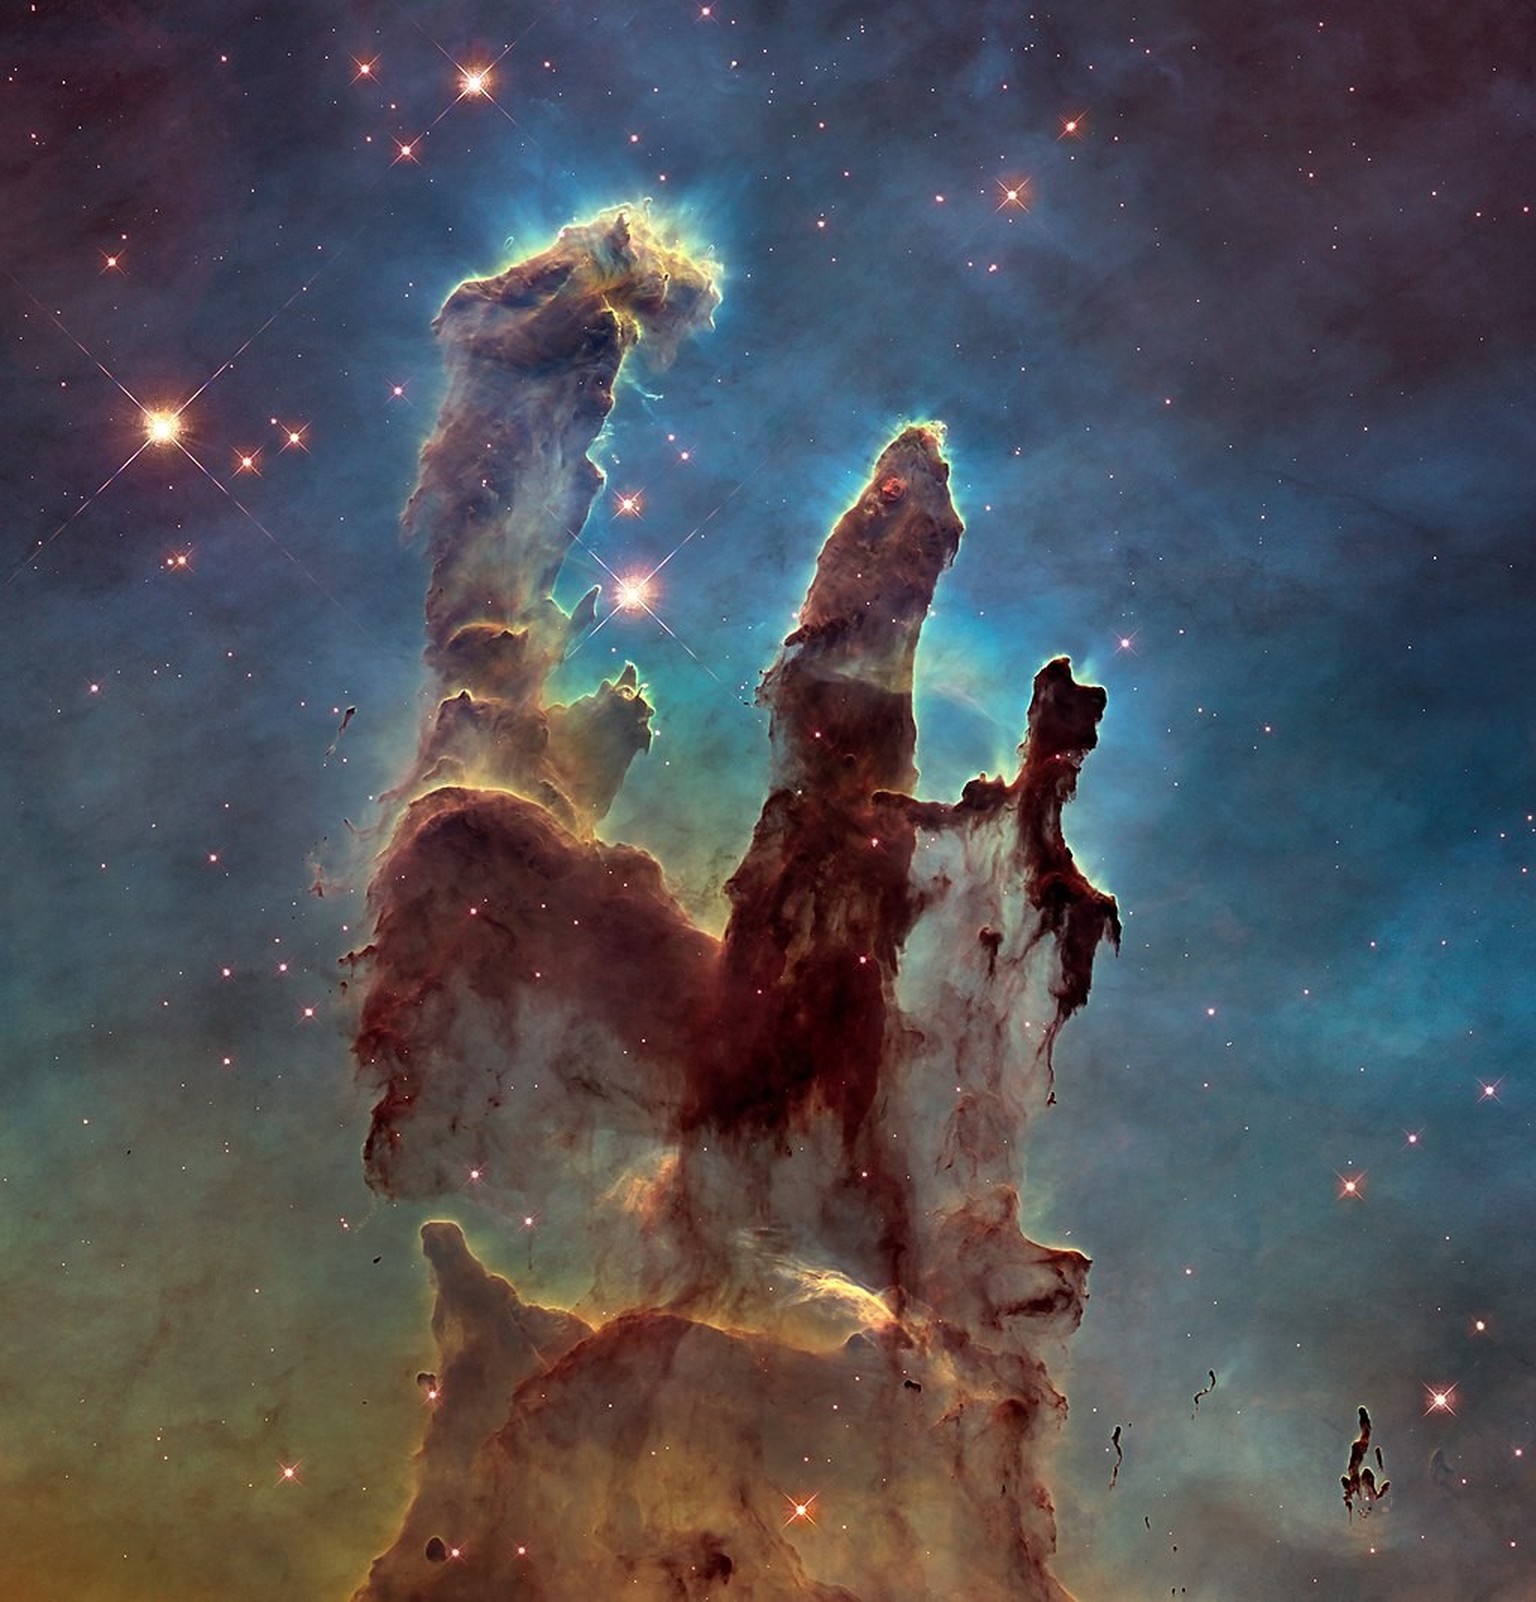 Hochaufgelöste Aufnahme der Säulen der Schöpfung, die 2014 als Würdigung für das Original von 1995 gemacht wurde.
Von NASA, ESA, and the Hubble Heritage Team (STScI/AURA) - http://hubblesite.org/image ...